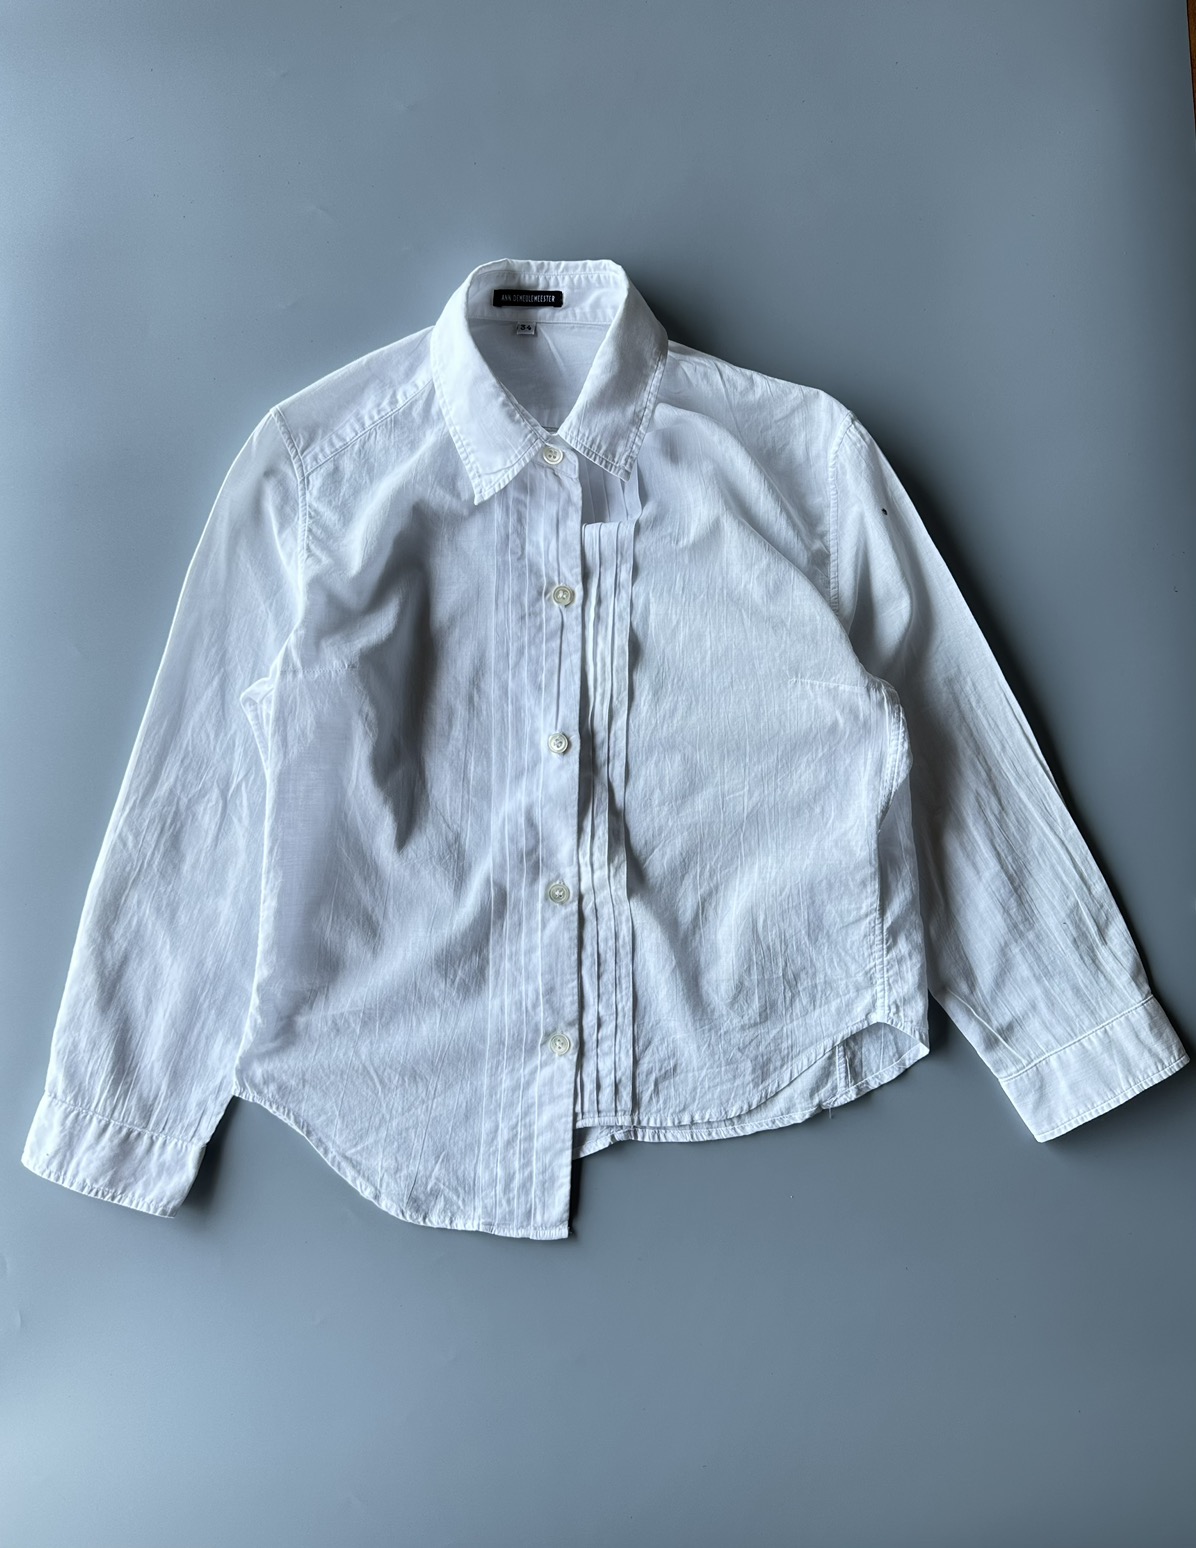 Ann Demeulemeester - Asymmetrical Shirt - 1